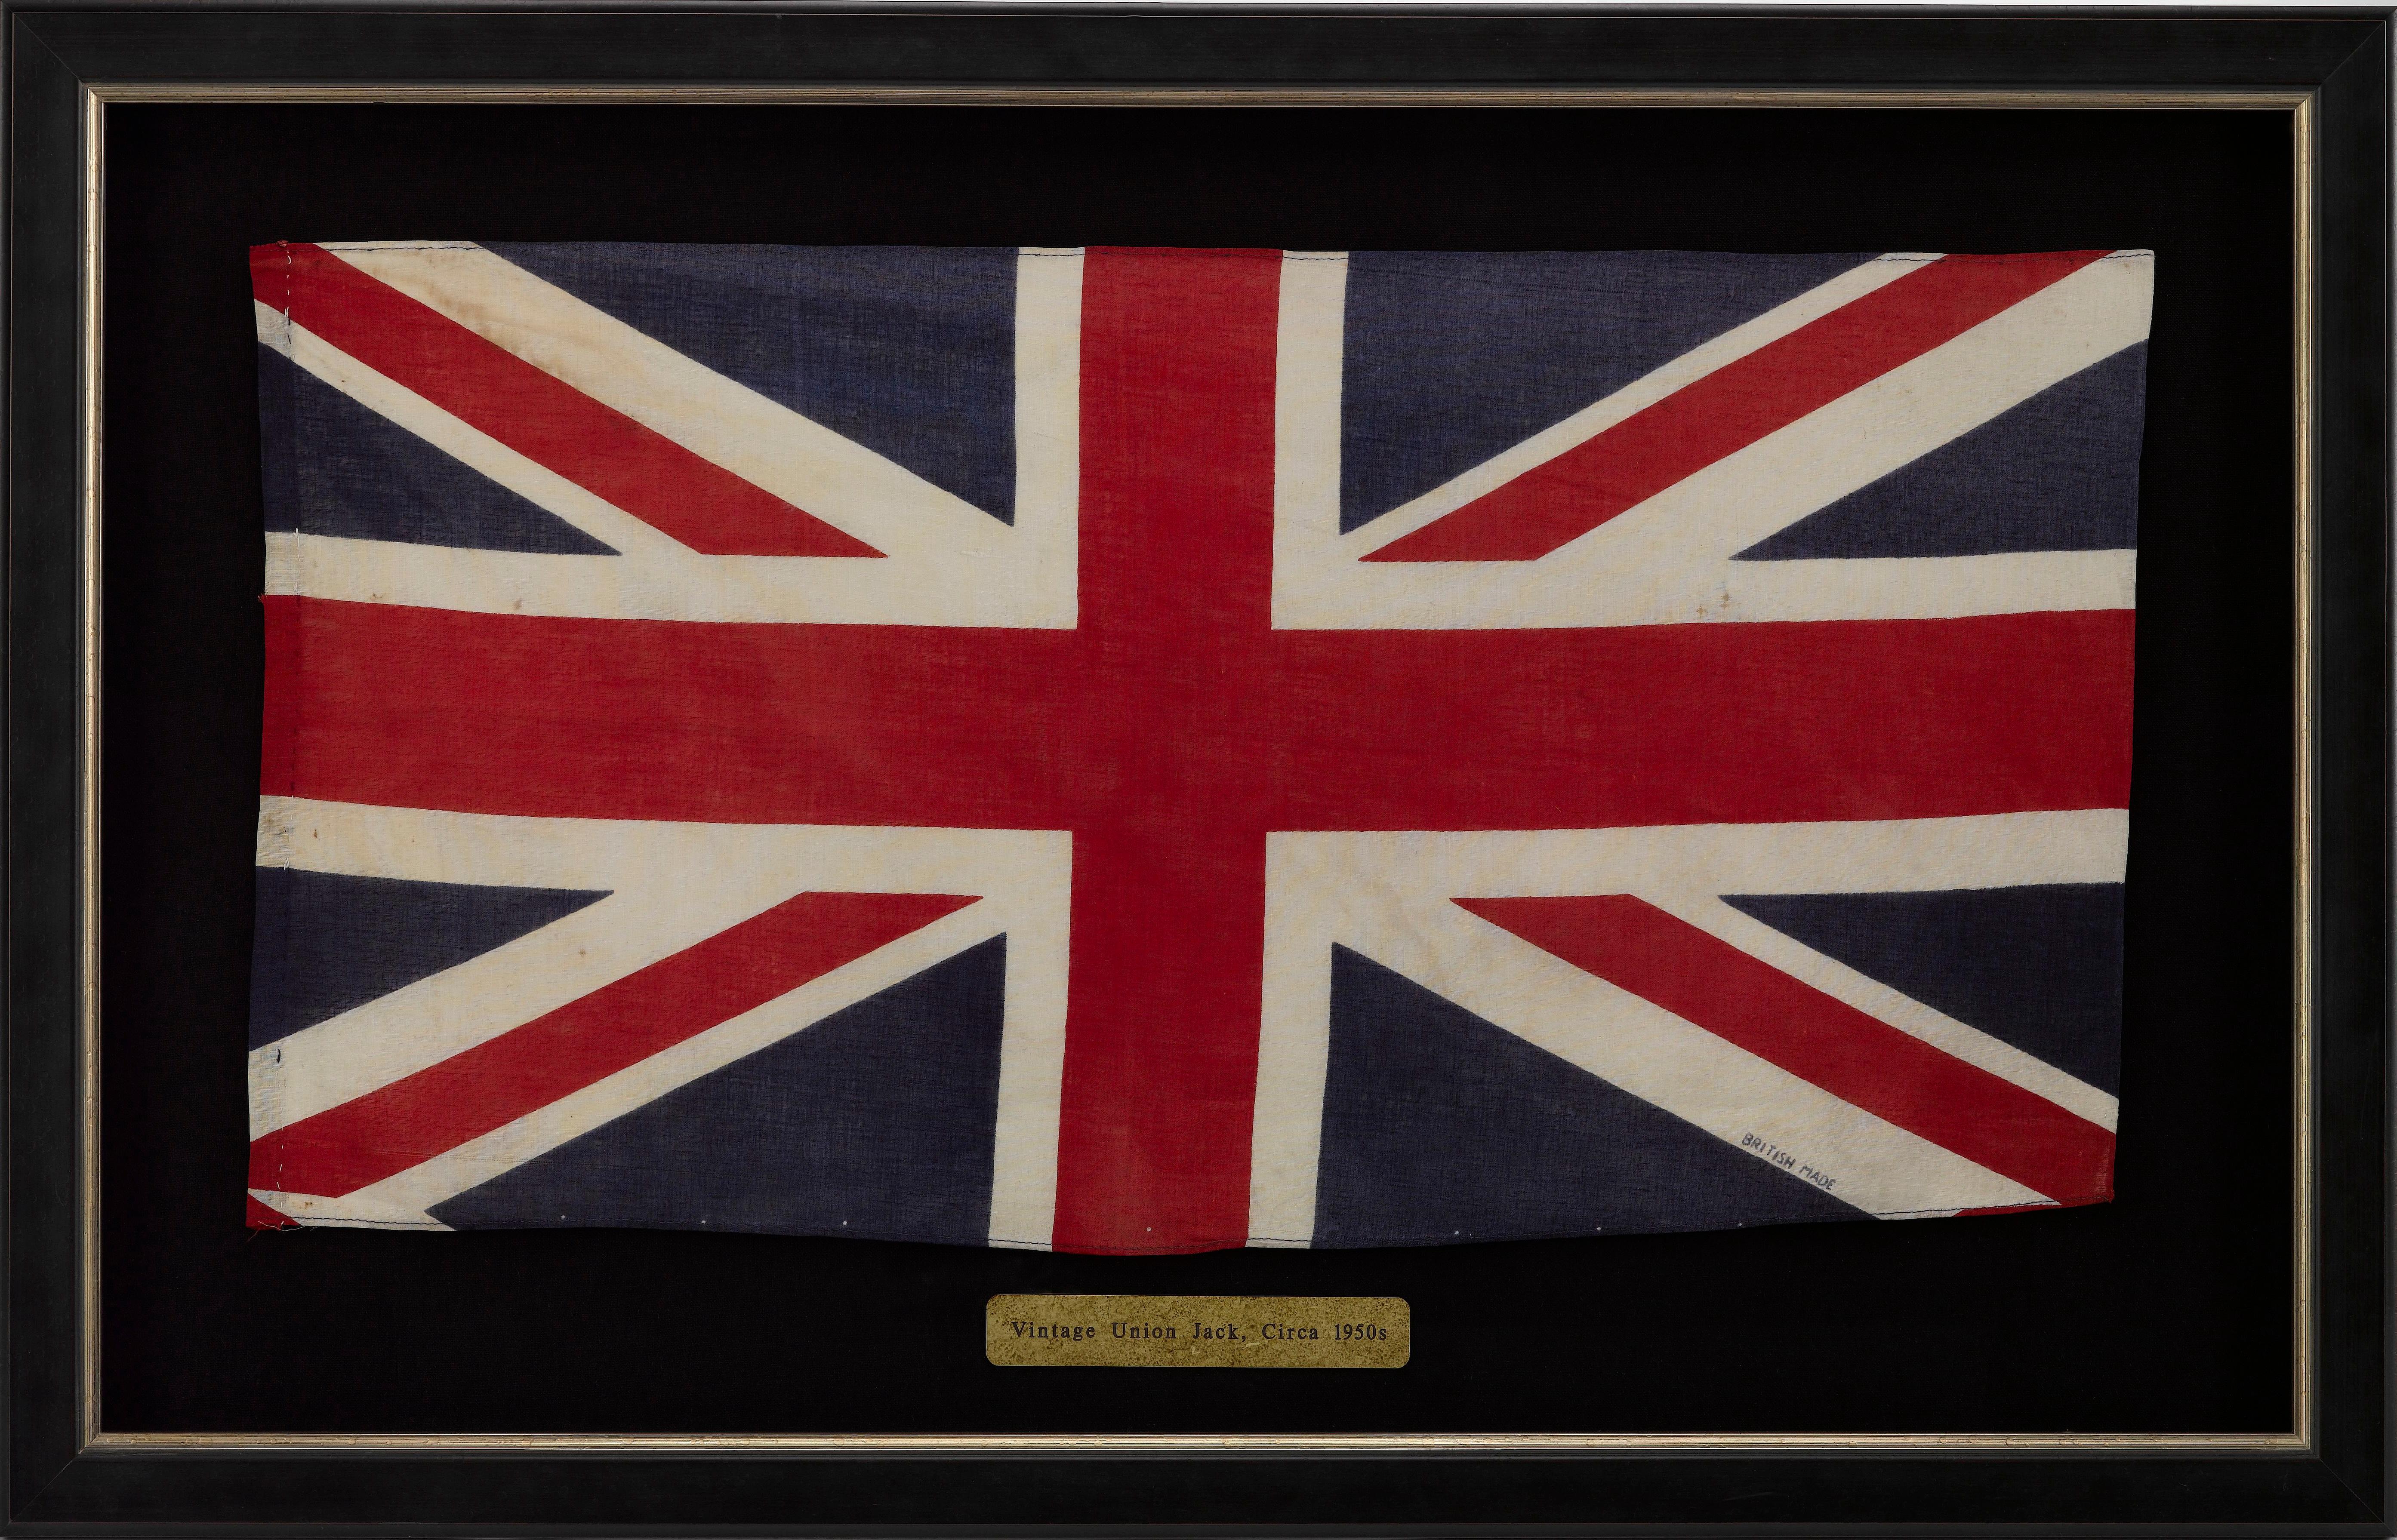 Il s'agit d'un magnifique drapeau de parade de l'Union Jack, datant du début des années 1950, pendant les premières années du règne de la reine Élisabeth II. Le drapeau est imprimé sur du coton, avec des ourlets cousus à la machine en haut et en